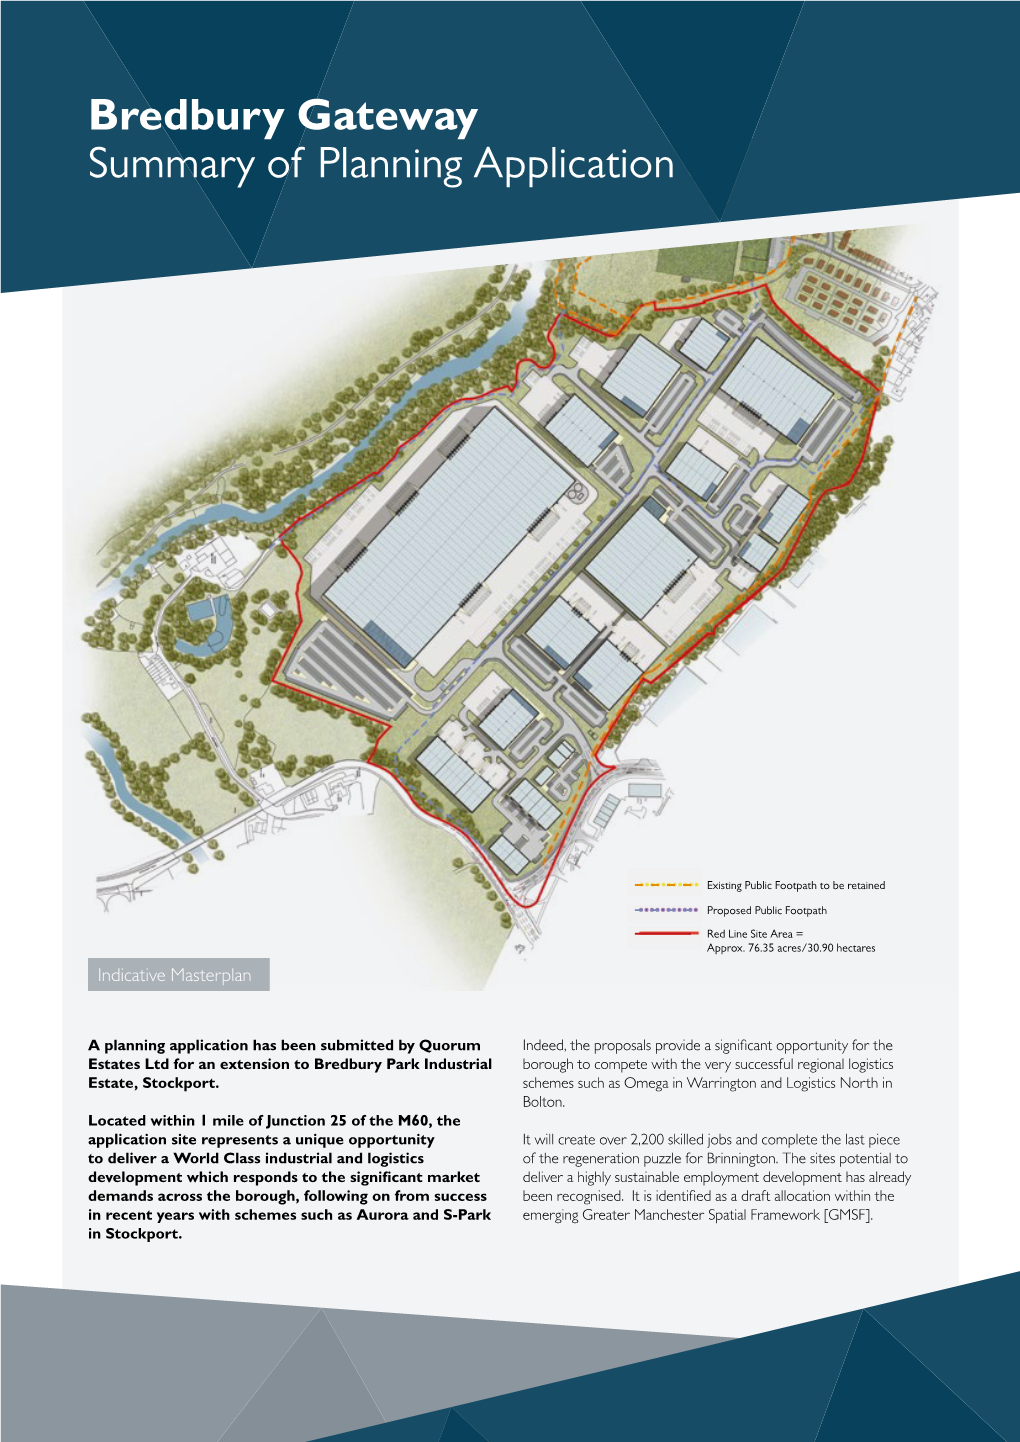 Bredbury Gateway Summary of Planning Application